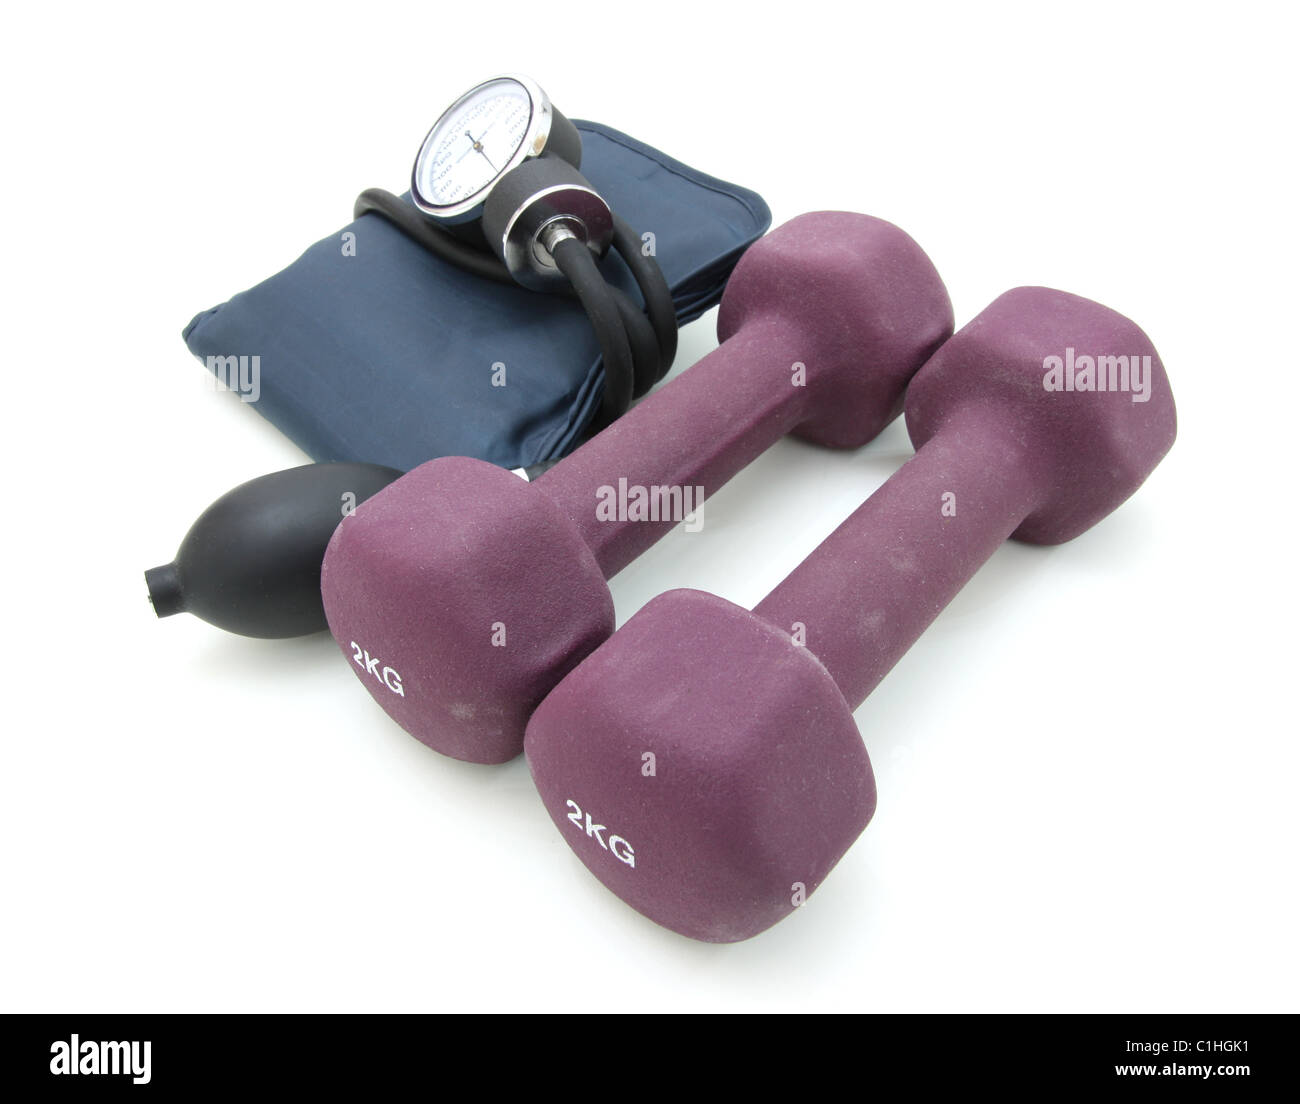 Stethoskop und Hantel Training Gewichte zusammen, um einen gesunden Lebensstil zu konzipieren. Stockfoto